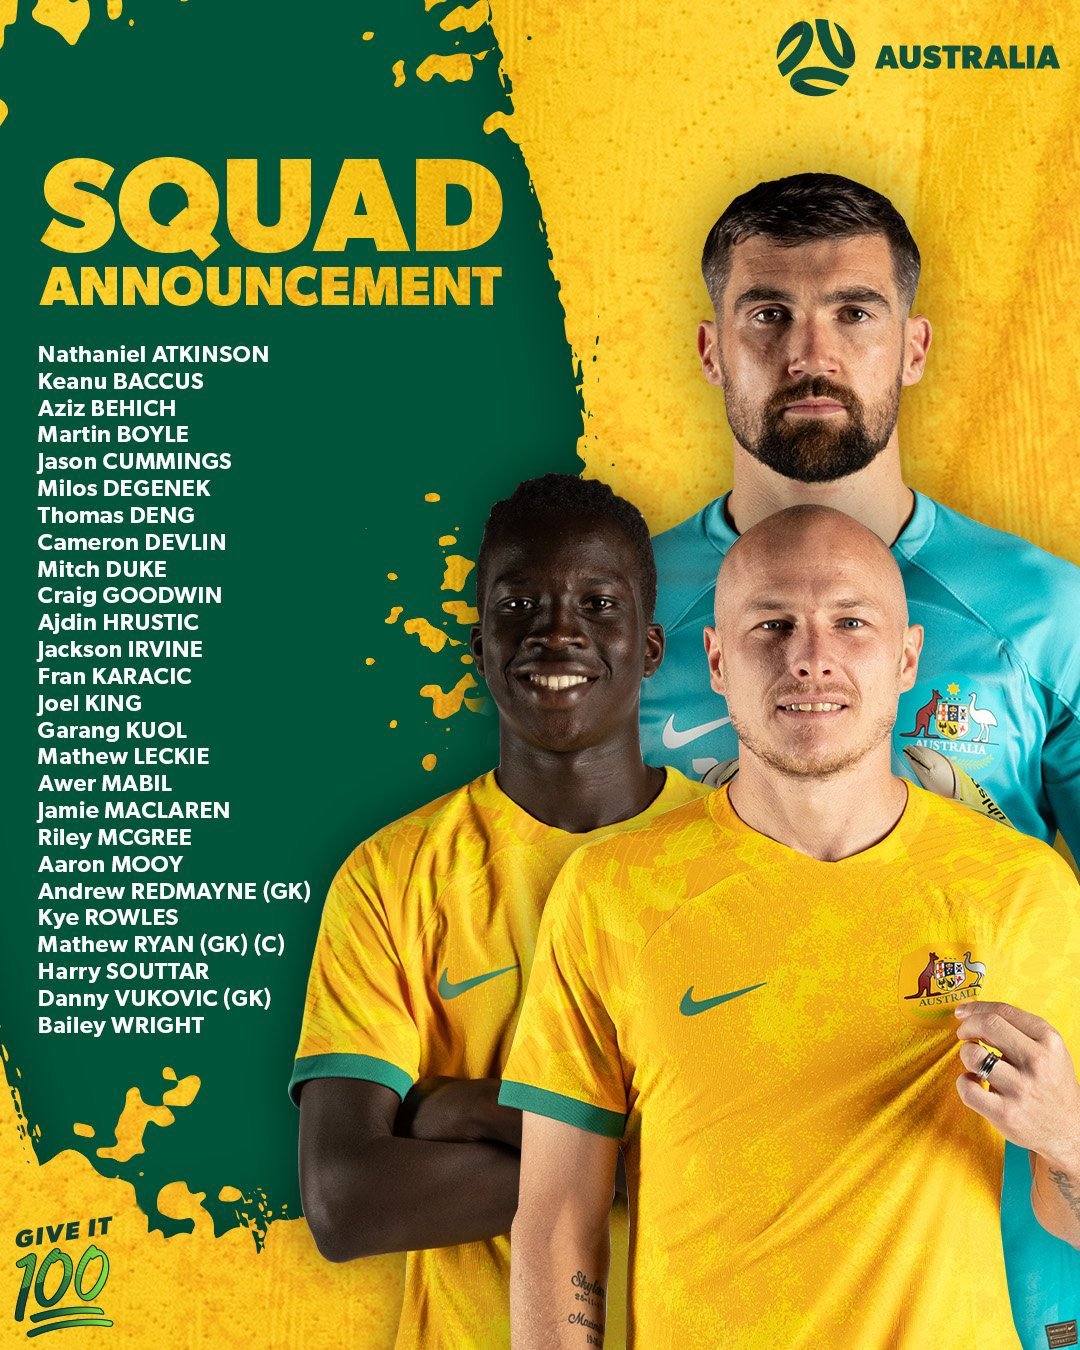 Australia's squad for Qatar 2022 